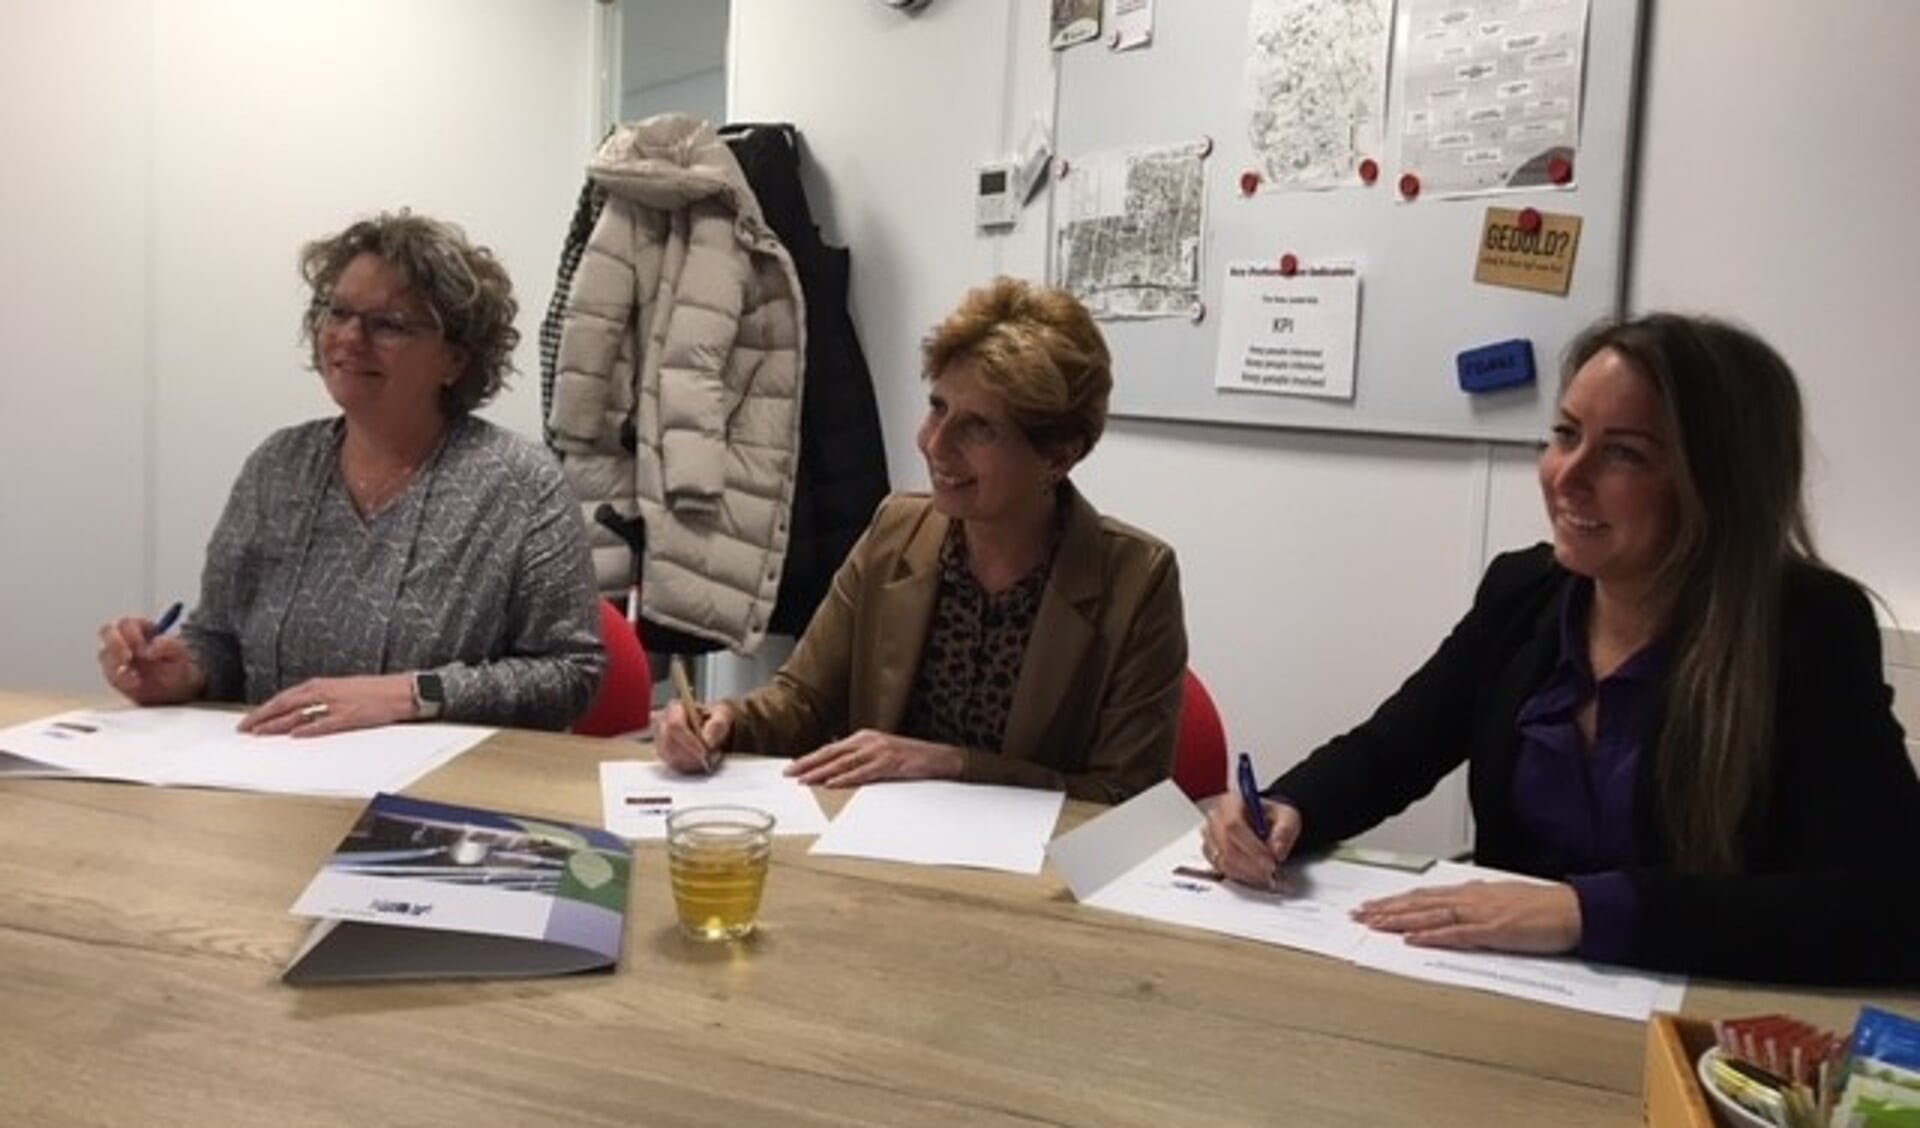  Caroline Versprille Lathouwers (bestuurder Stichting Librijn), Tineke Onink (Bestuurder Kinderopvang Morgen) en wethouder Larissa Bentvelzen (r) van Onderwijs tekenen de overeenkomst.